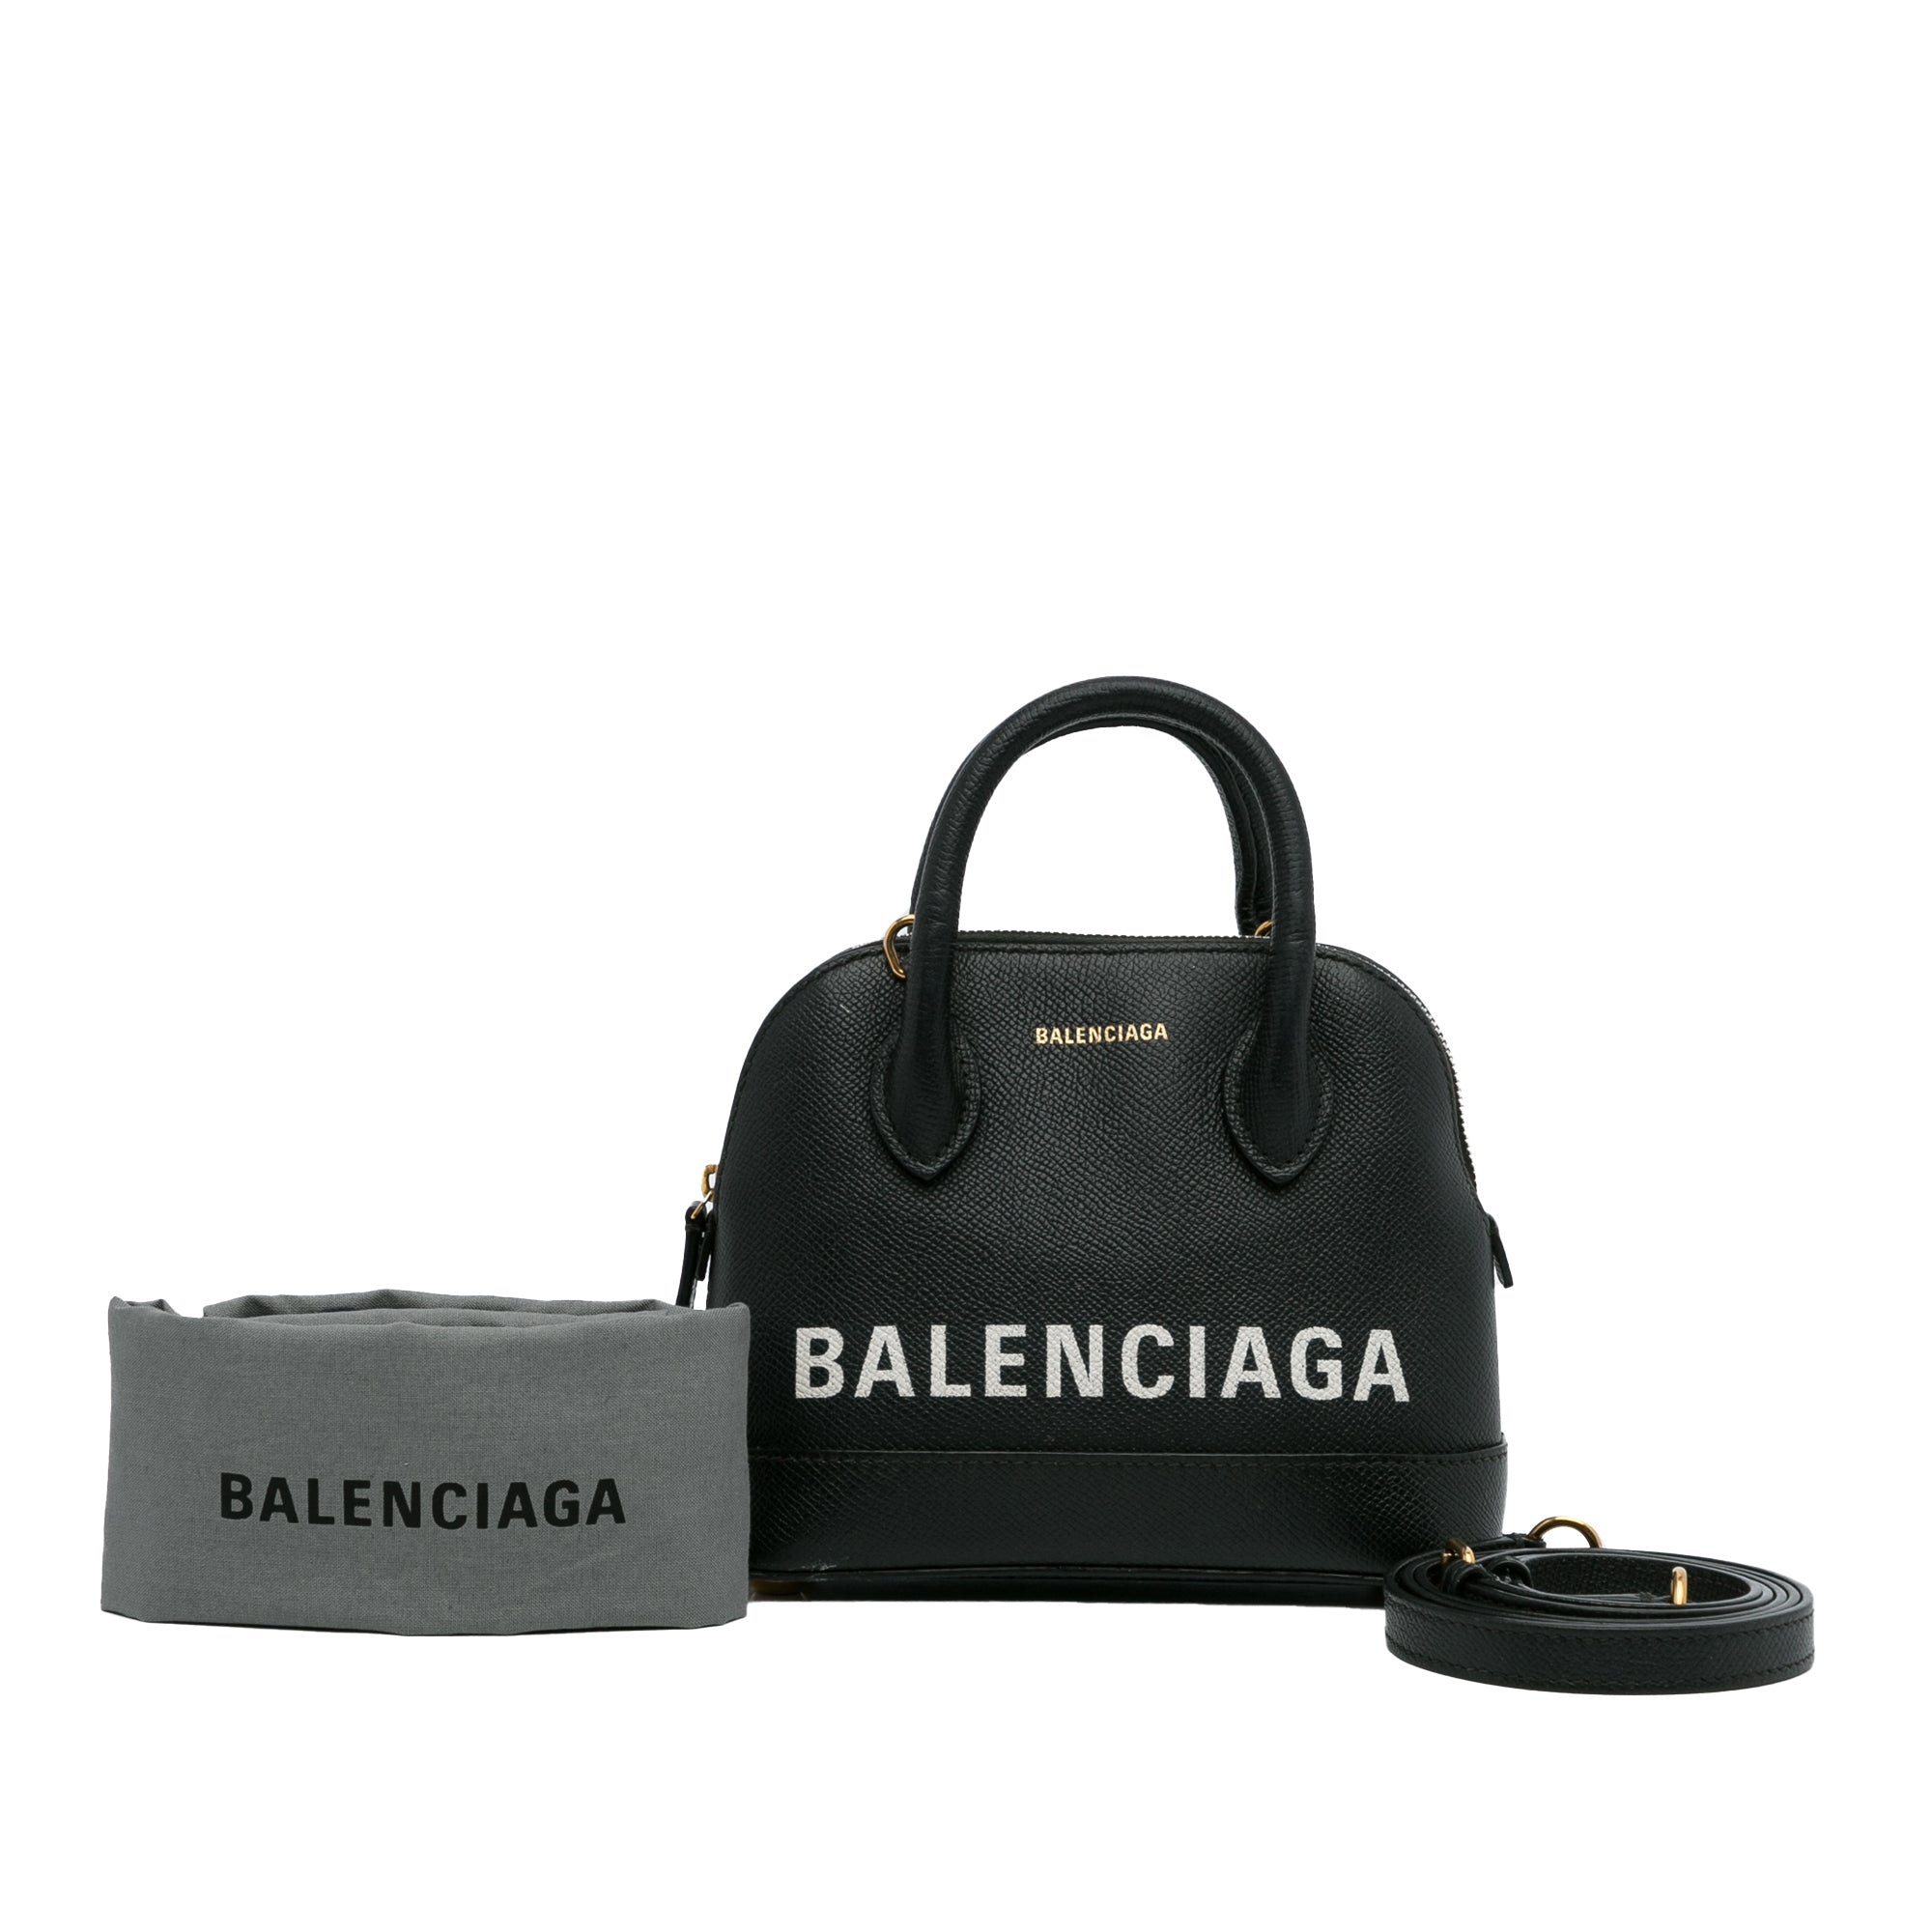 Balenciaga Black I Love Techno Ville Small Top Handle Bag